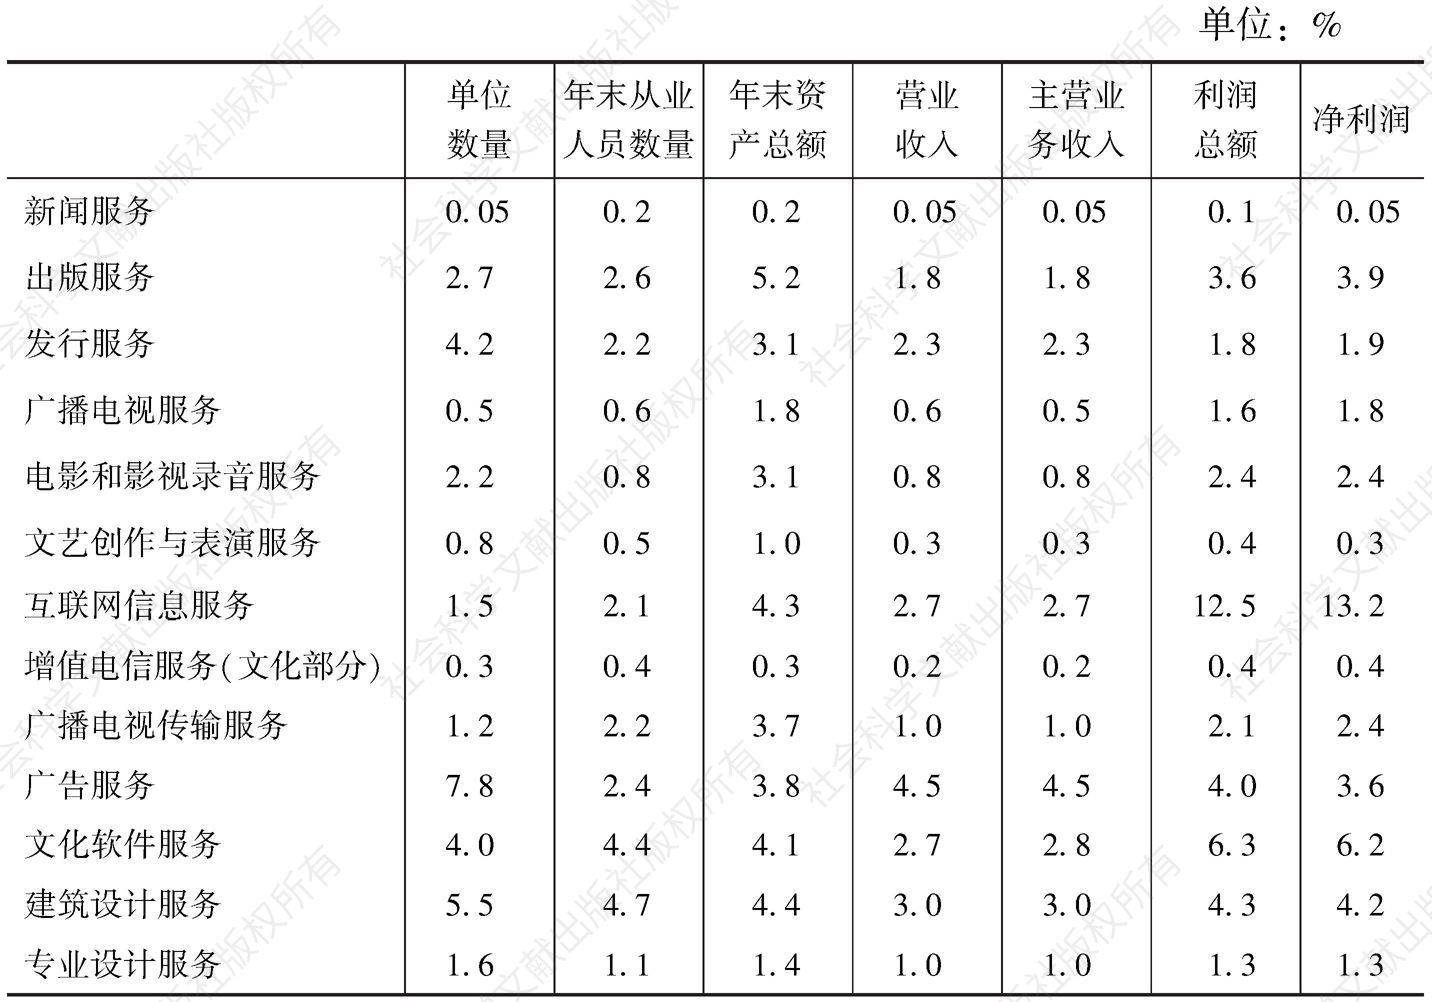 表7-6 2013年全国规模以上文化企业主要经济指标中各“高关注度”中类所占比重